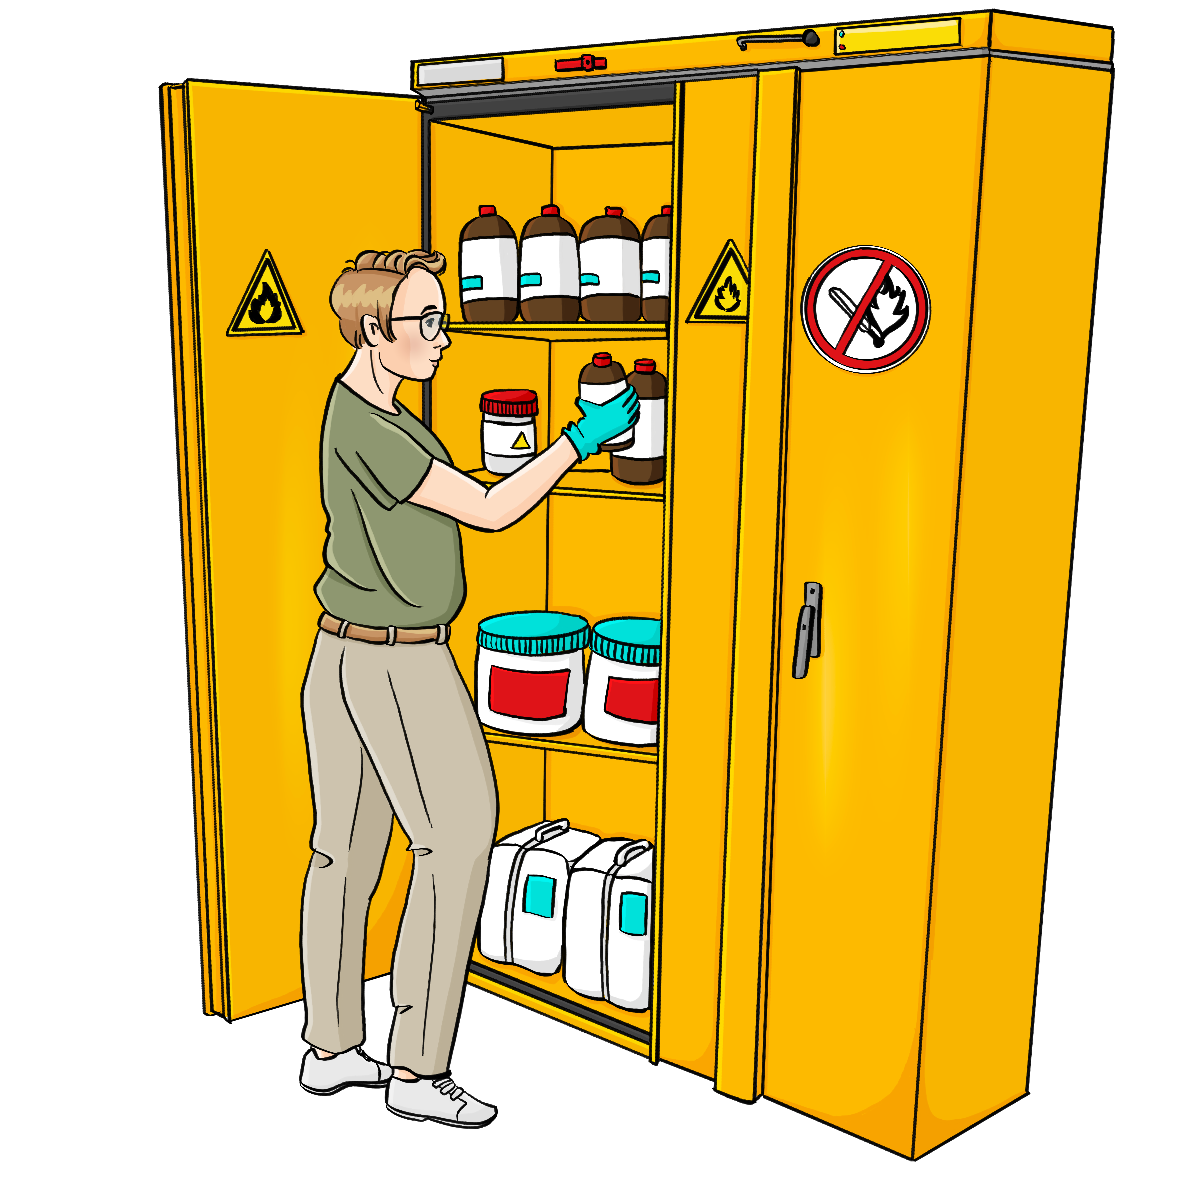 Eine Frau stellt eine Flasche in einen gelben Schrank mit verschiedenen Behältern. Auf dem Schrank sind Gefahrensymbole.